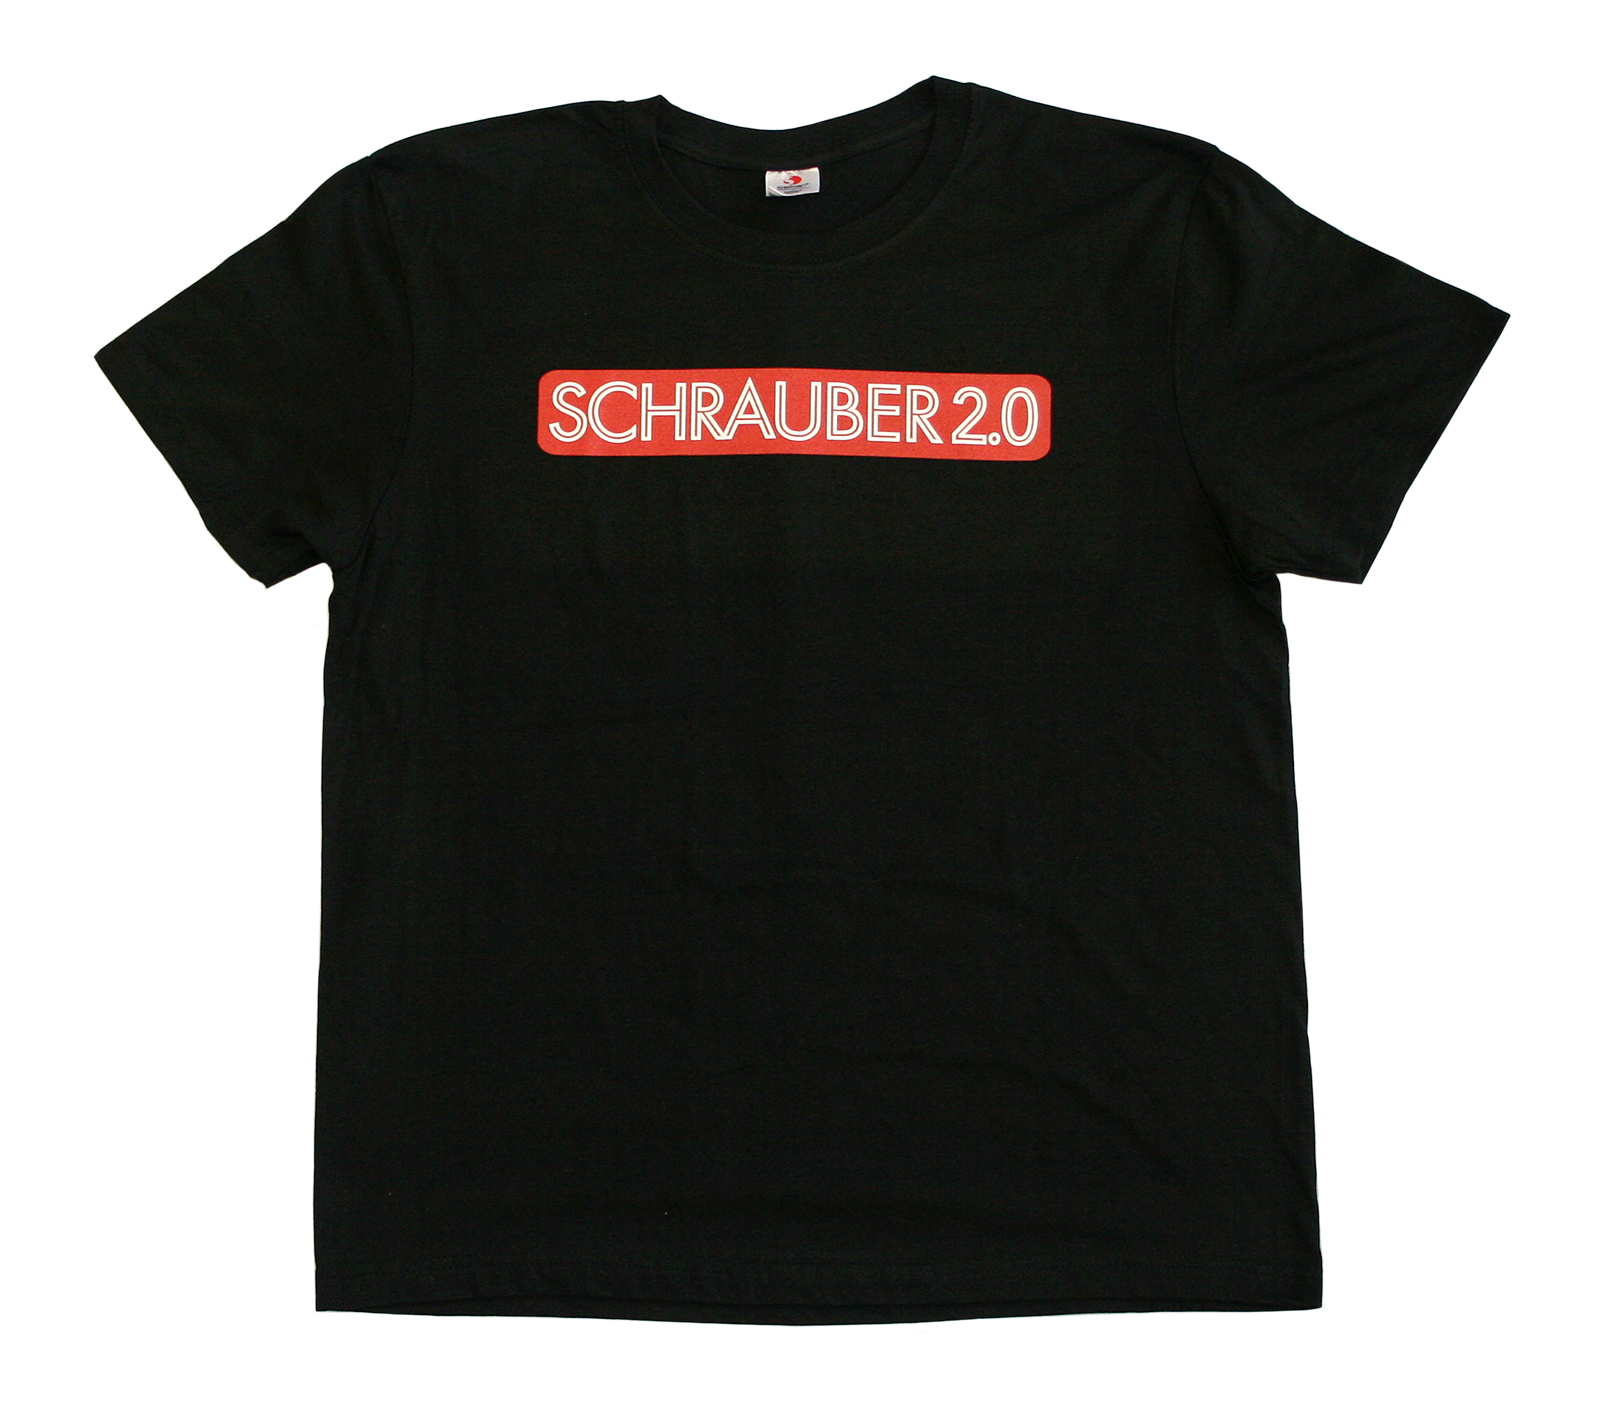 Comfort T-Shirt, Schrauber2.0, schwarz, L